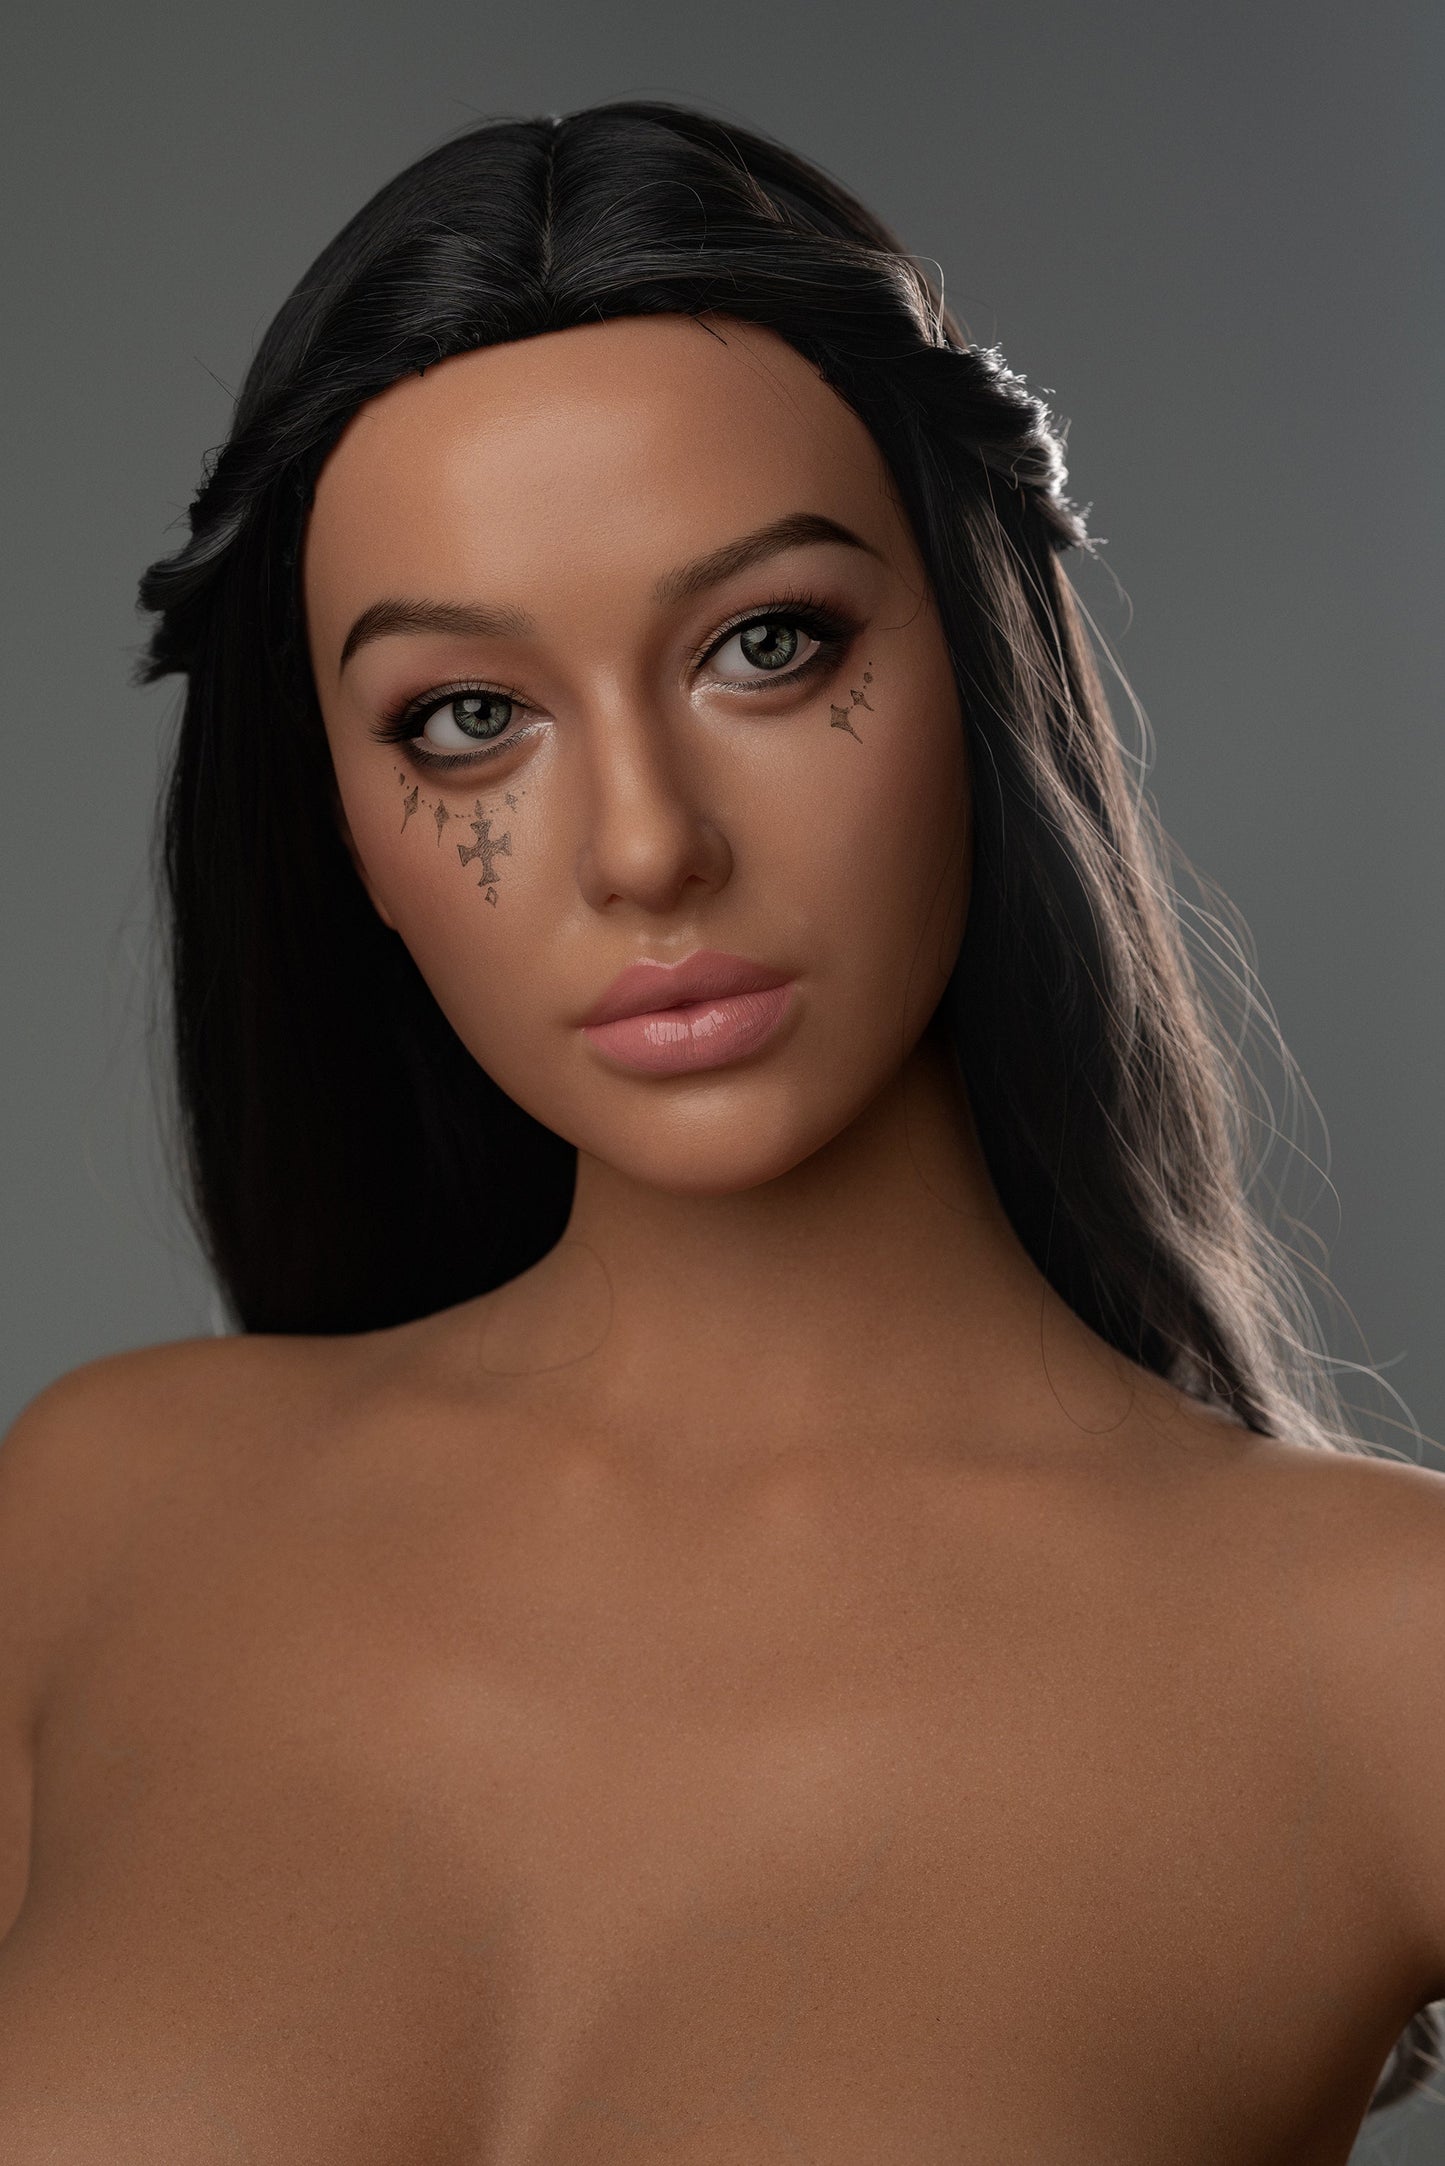 ZELEX Silicone Sex Doll Realistic Inspiration Series - Monica (APENAS CABEÇA) MANDÍBULA MÓVEL